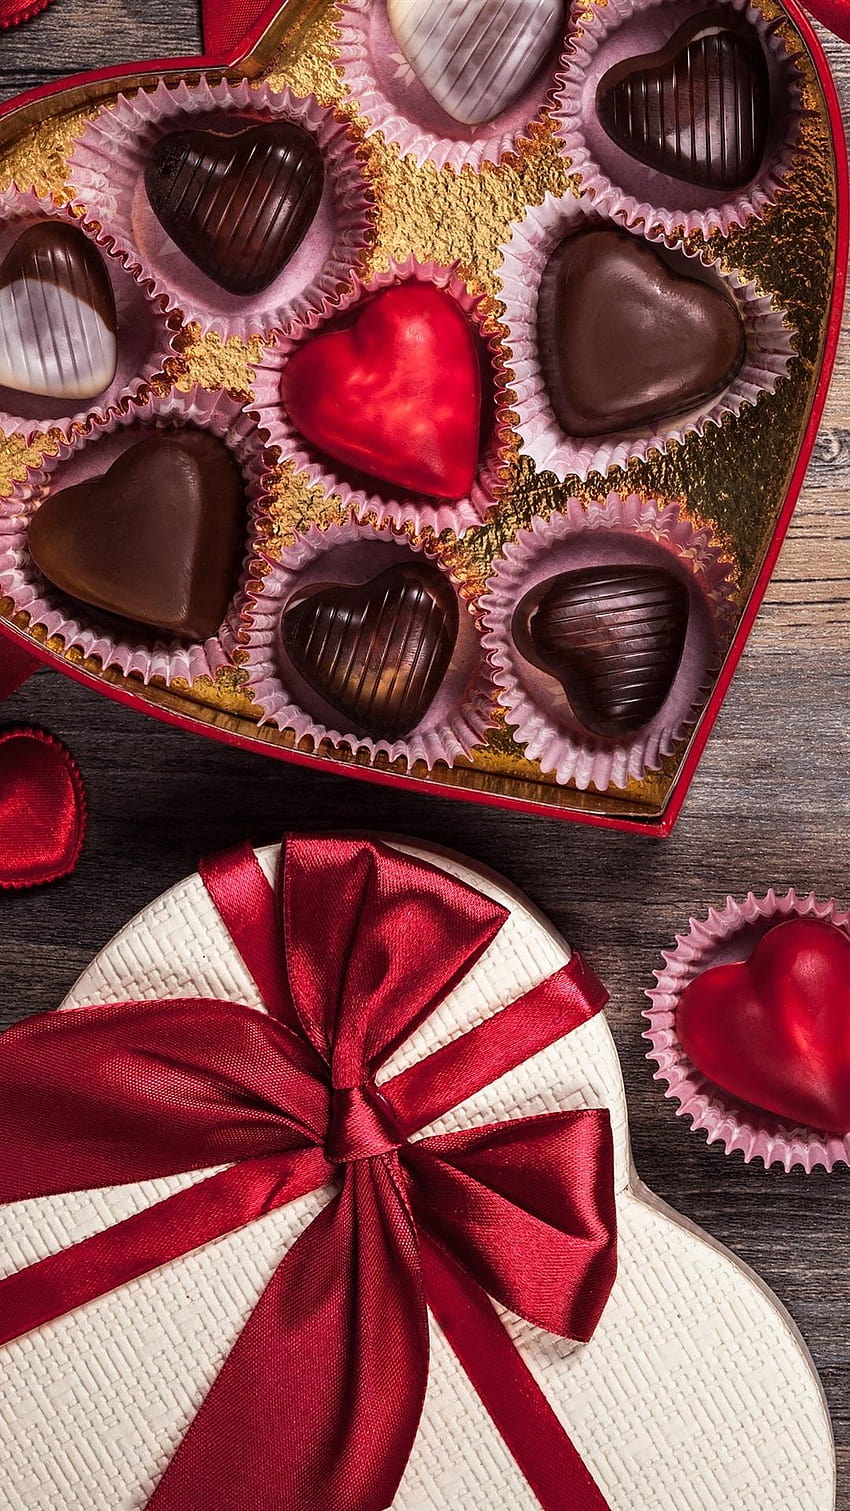 Những tấm ảnh về chủ đề socola cho ngày valentine cực đẹp với 94728 hình  ảnh chất lượng cao  Mua bán hình ảnh shutterstock giá rẻ chỉ từ 3000 đ  trong 2 phút